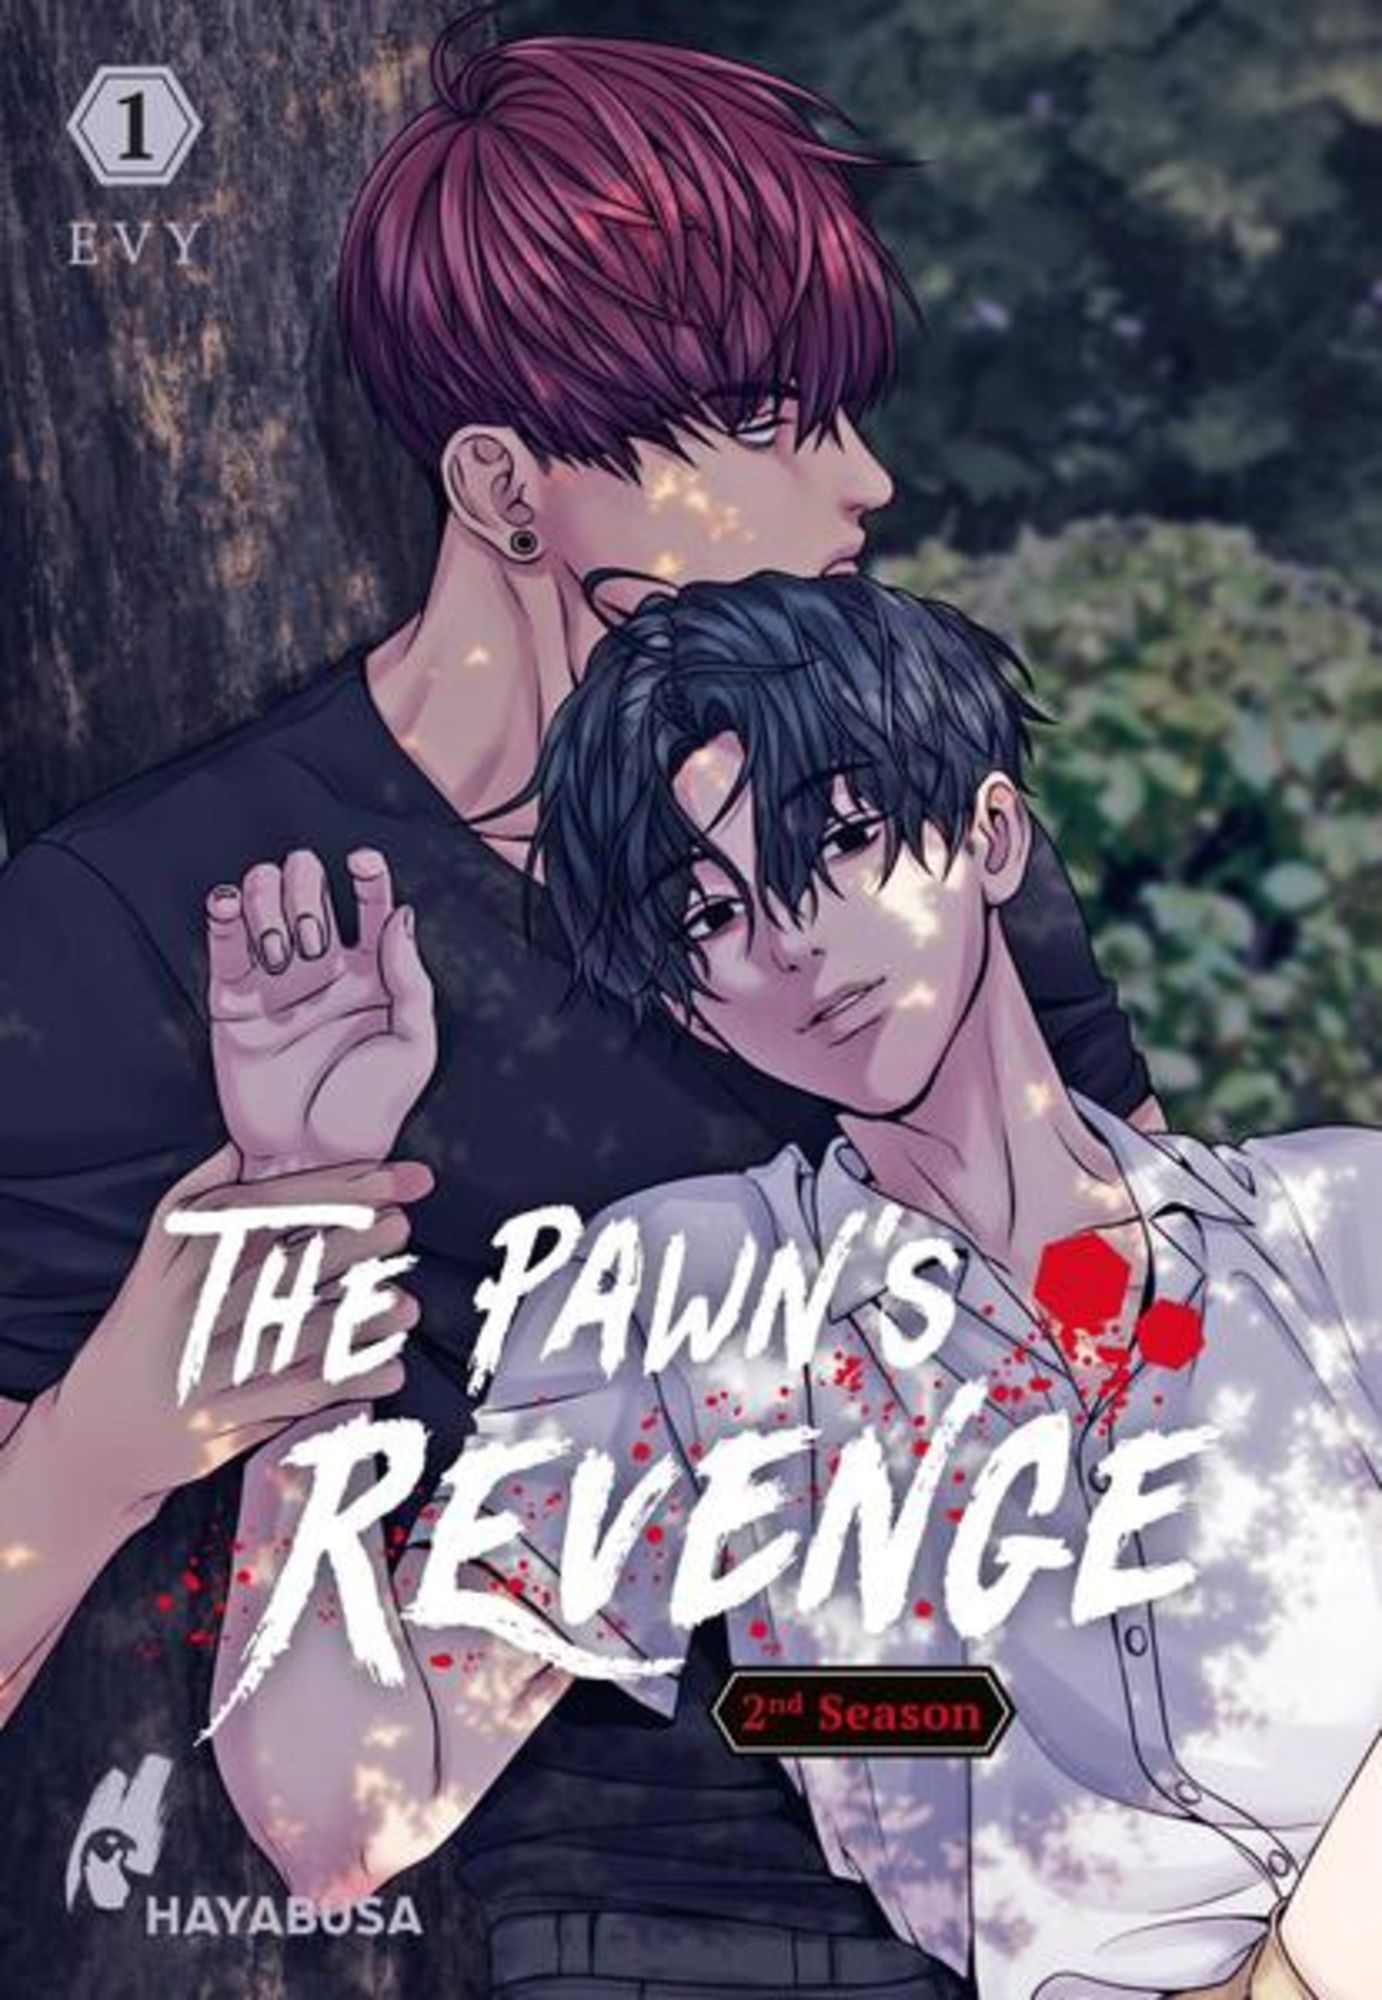 The Pawn's Revenge – 2nd Season 1' von 'EVY' - Buch - '978-3-551-62260-0